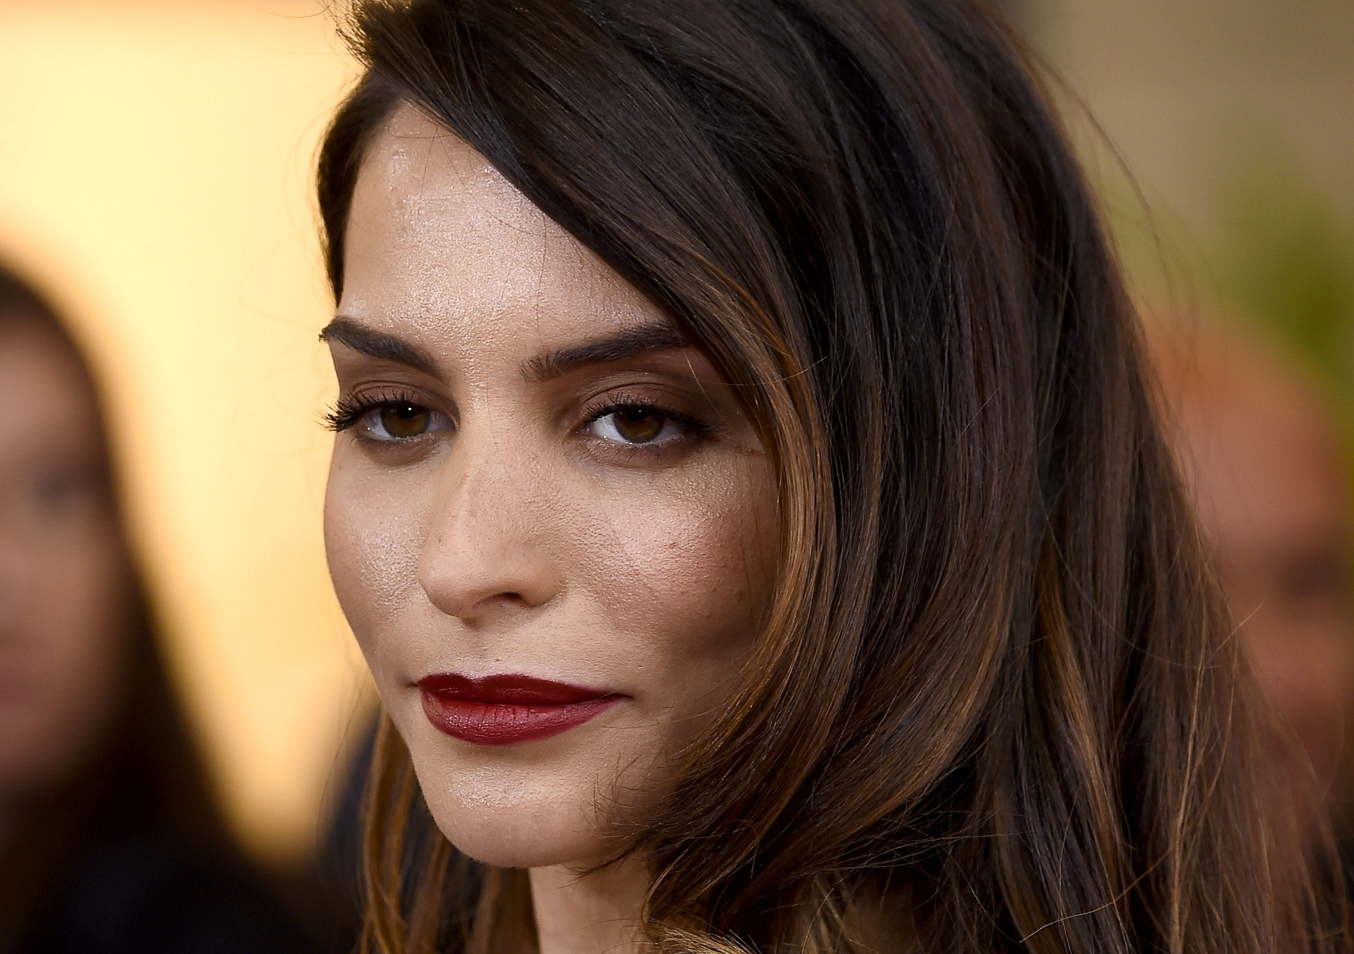 La hija del Puma deslumbró la alfombra roja de los Oscars 2015